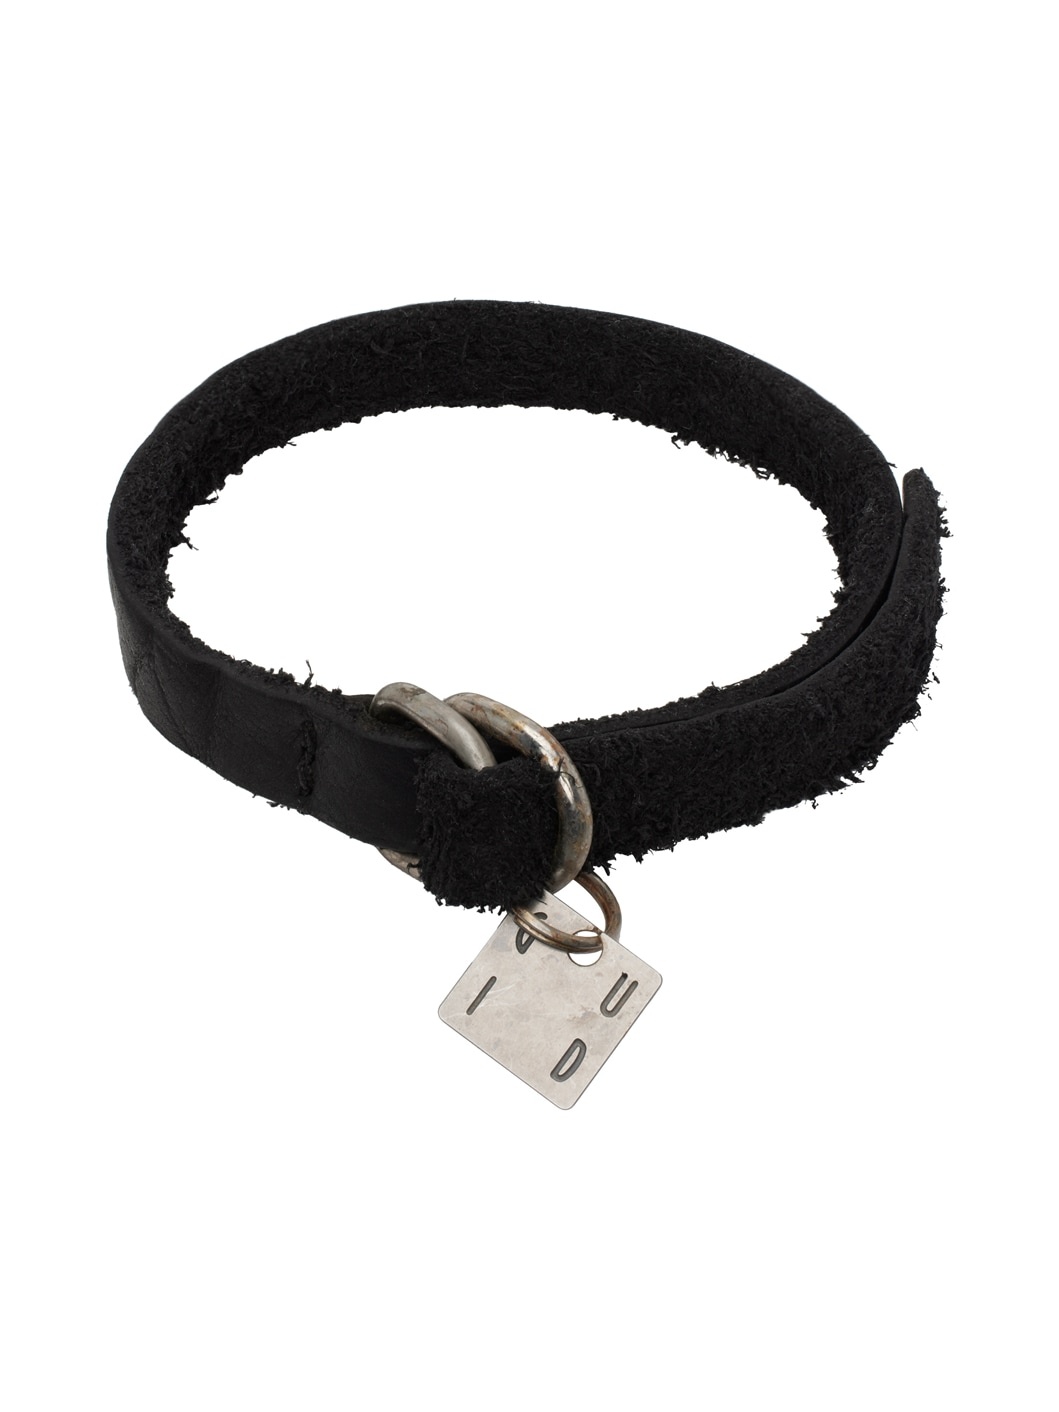 Black Bison Leather Bracelet - 1